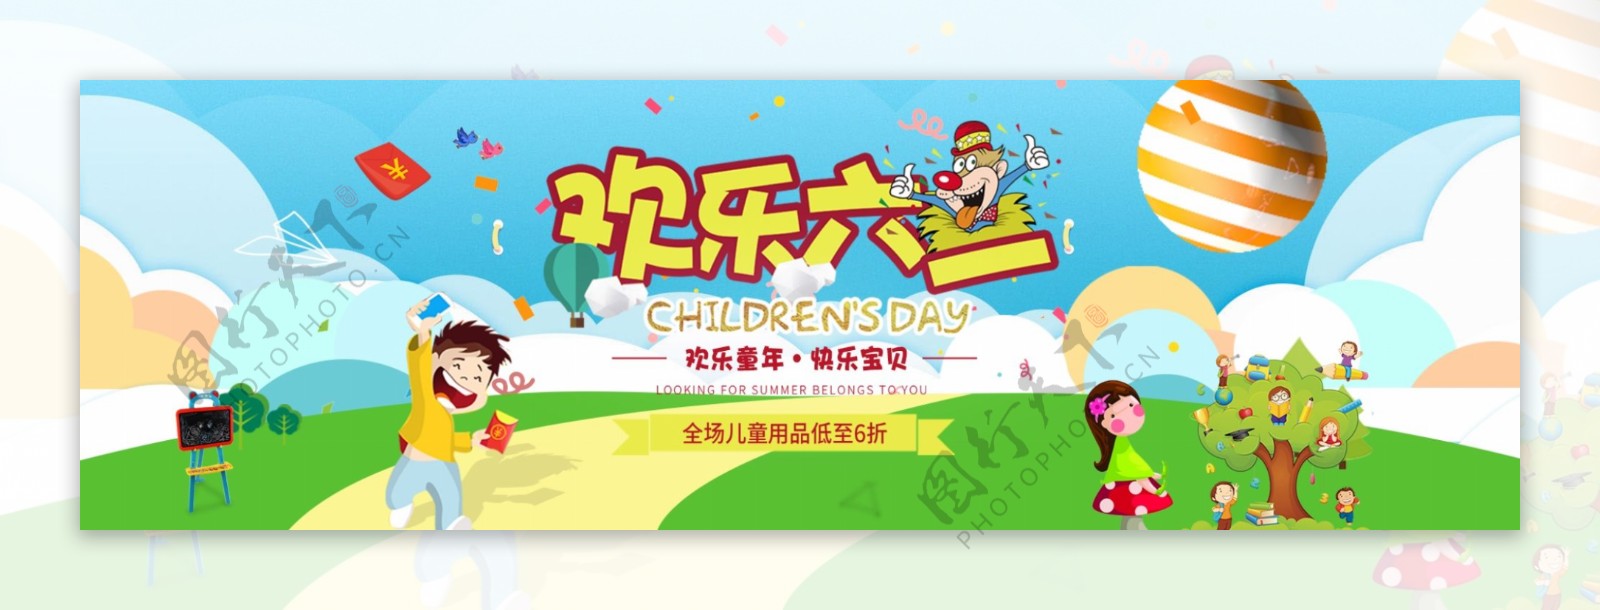 电子商务六一儿童节促销banner大图